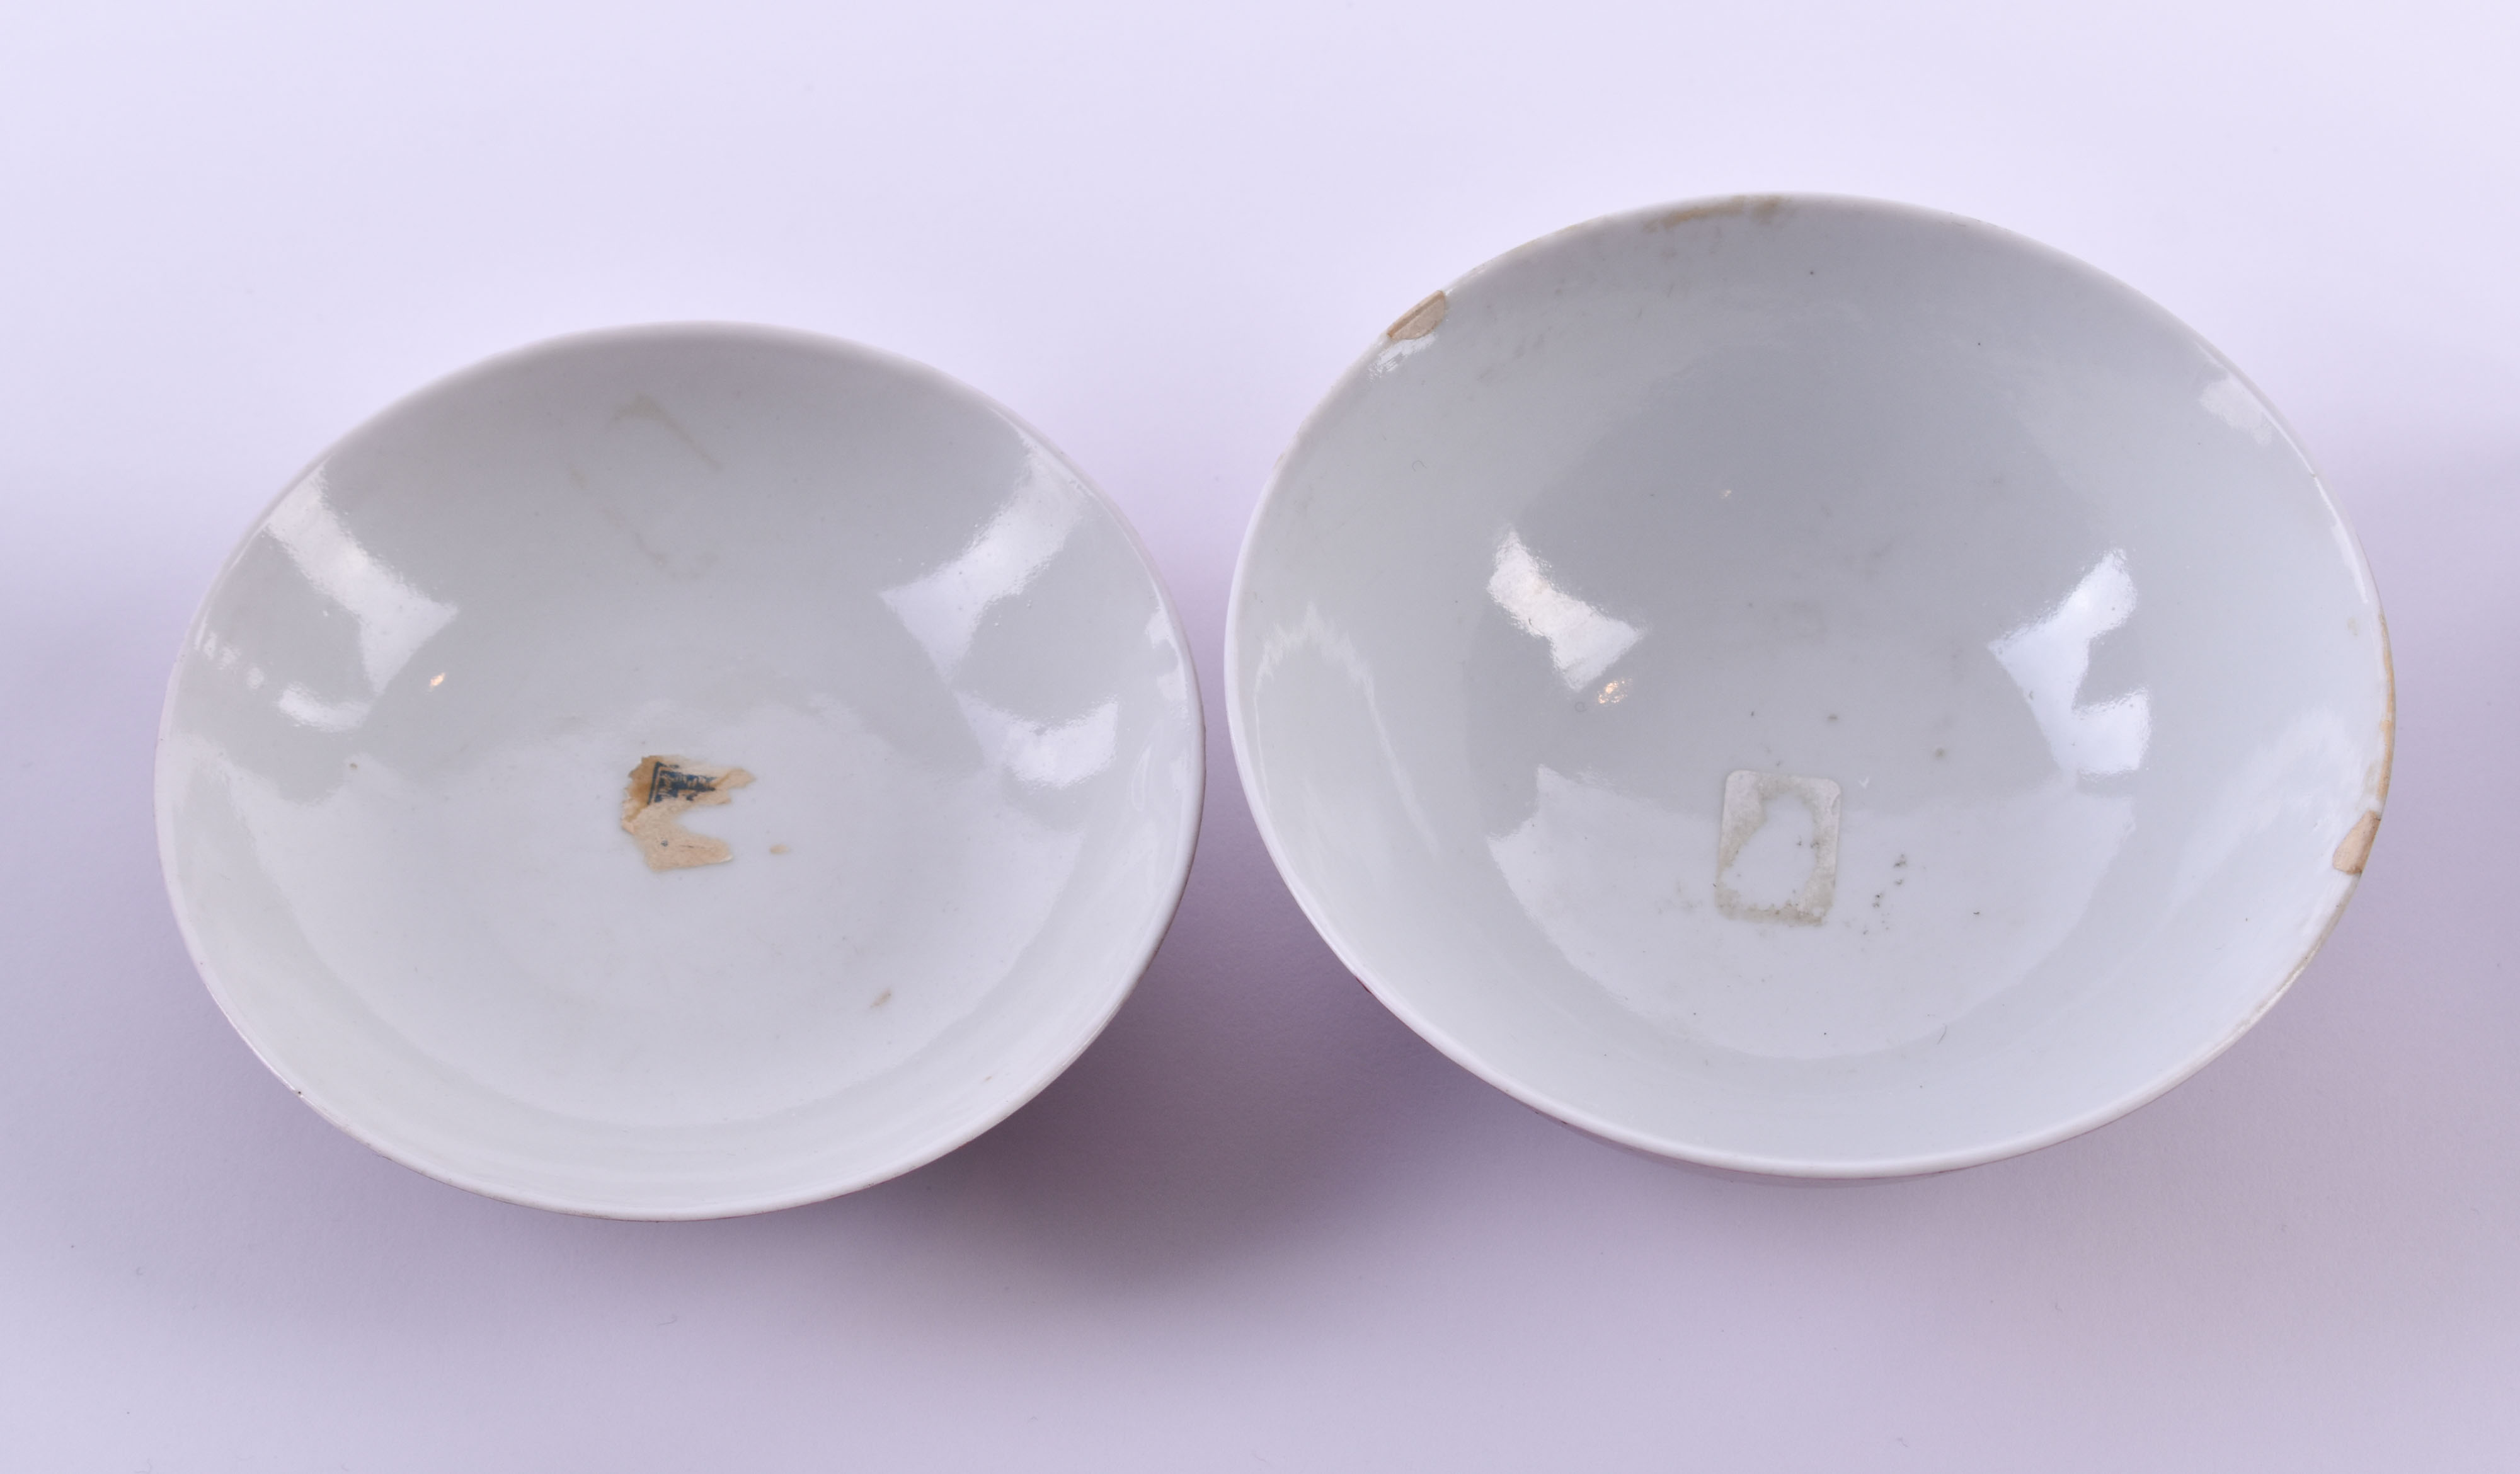  Tea bowl China Qing dynasty - Image 8 of 10